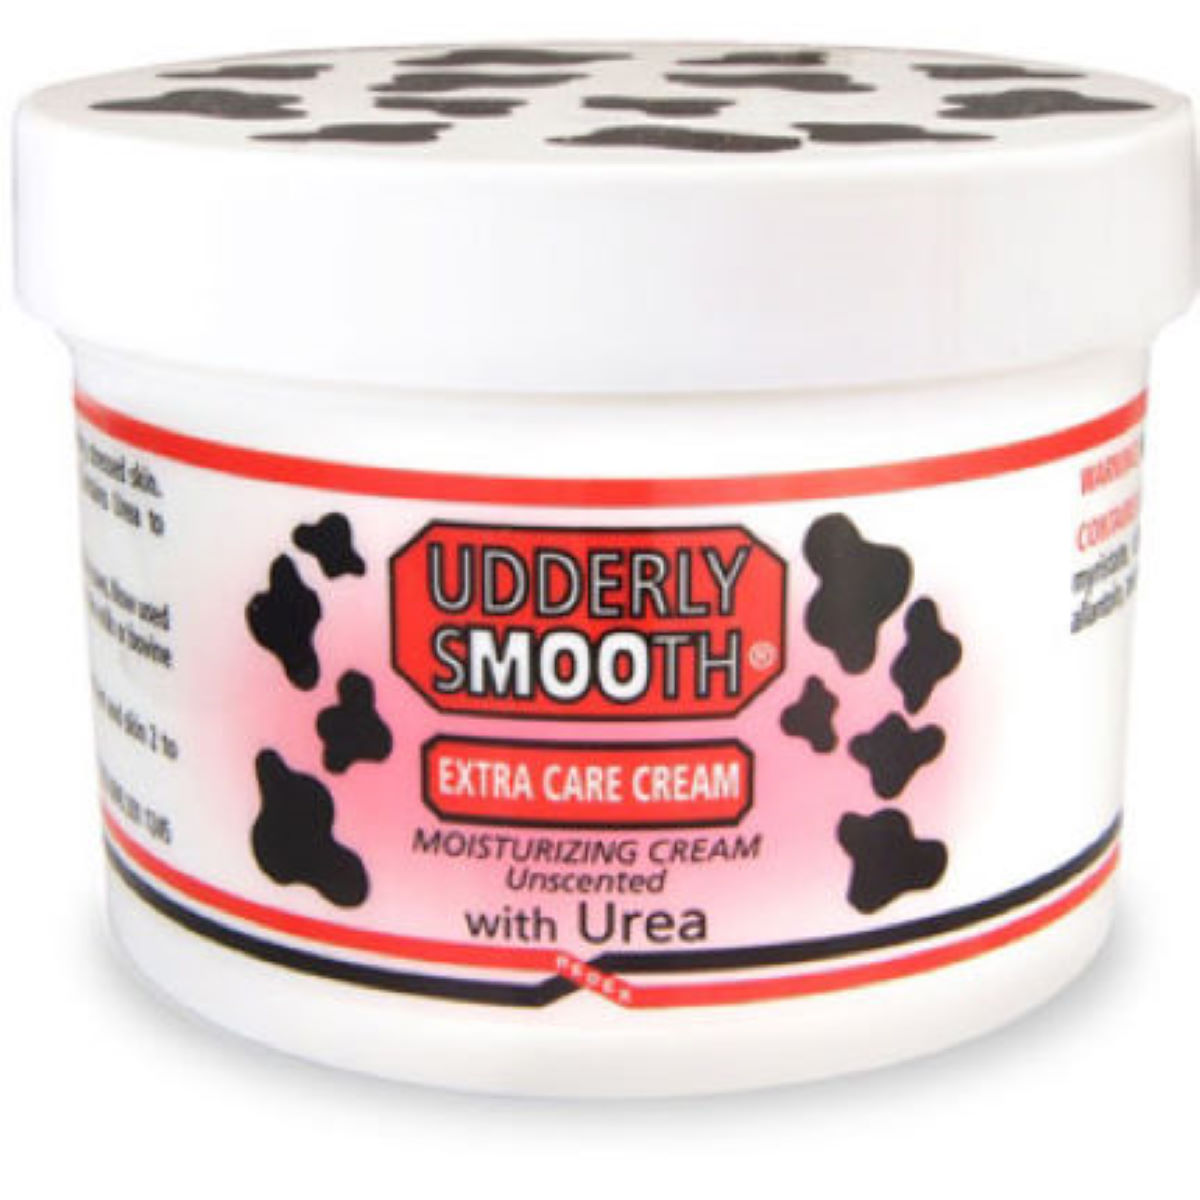 Crema hidratante Udderly Smooth Extra Care (227 g) - Cremas hidratantes y cuidado de la piel